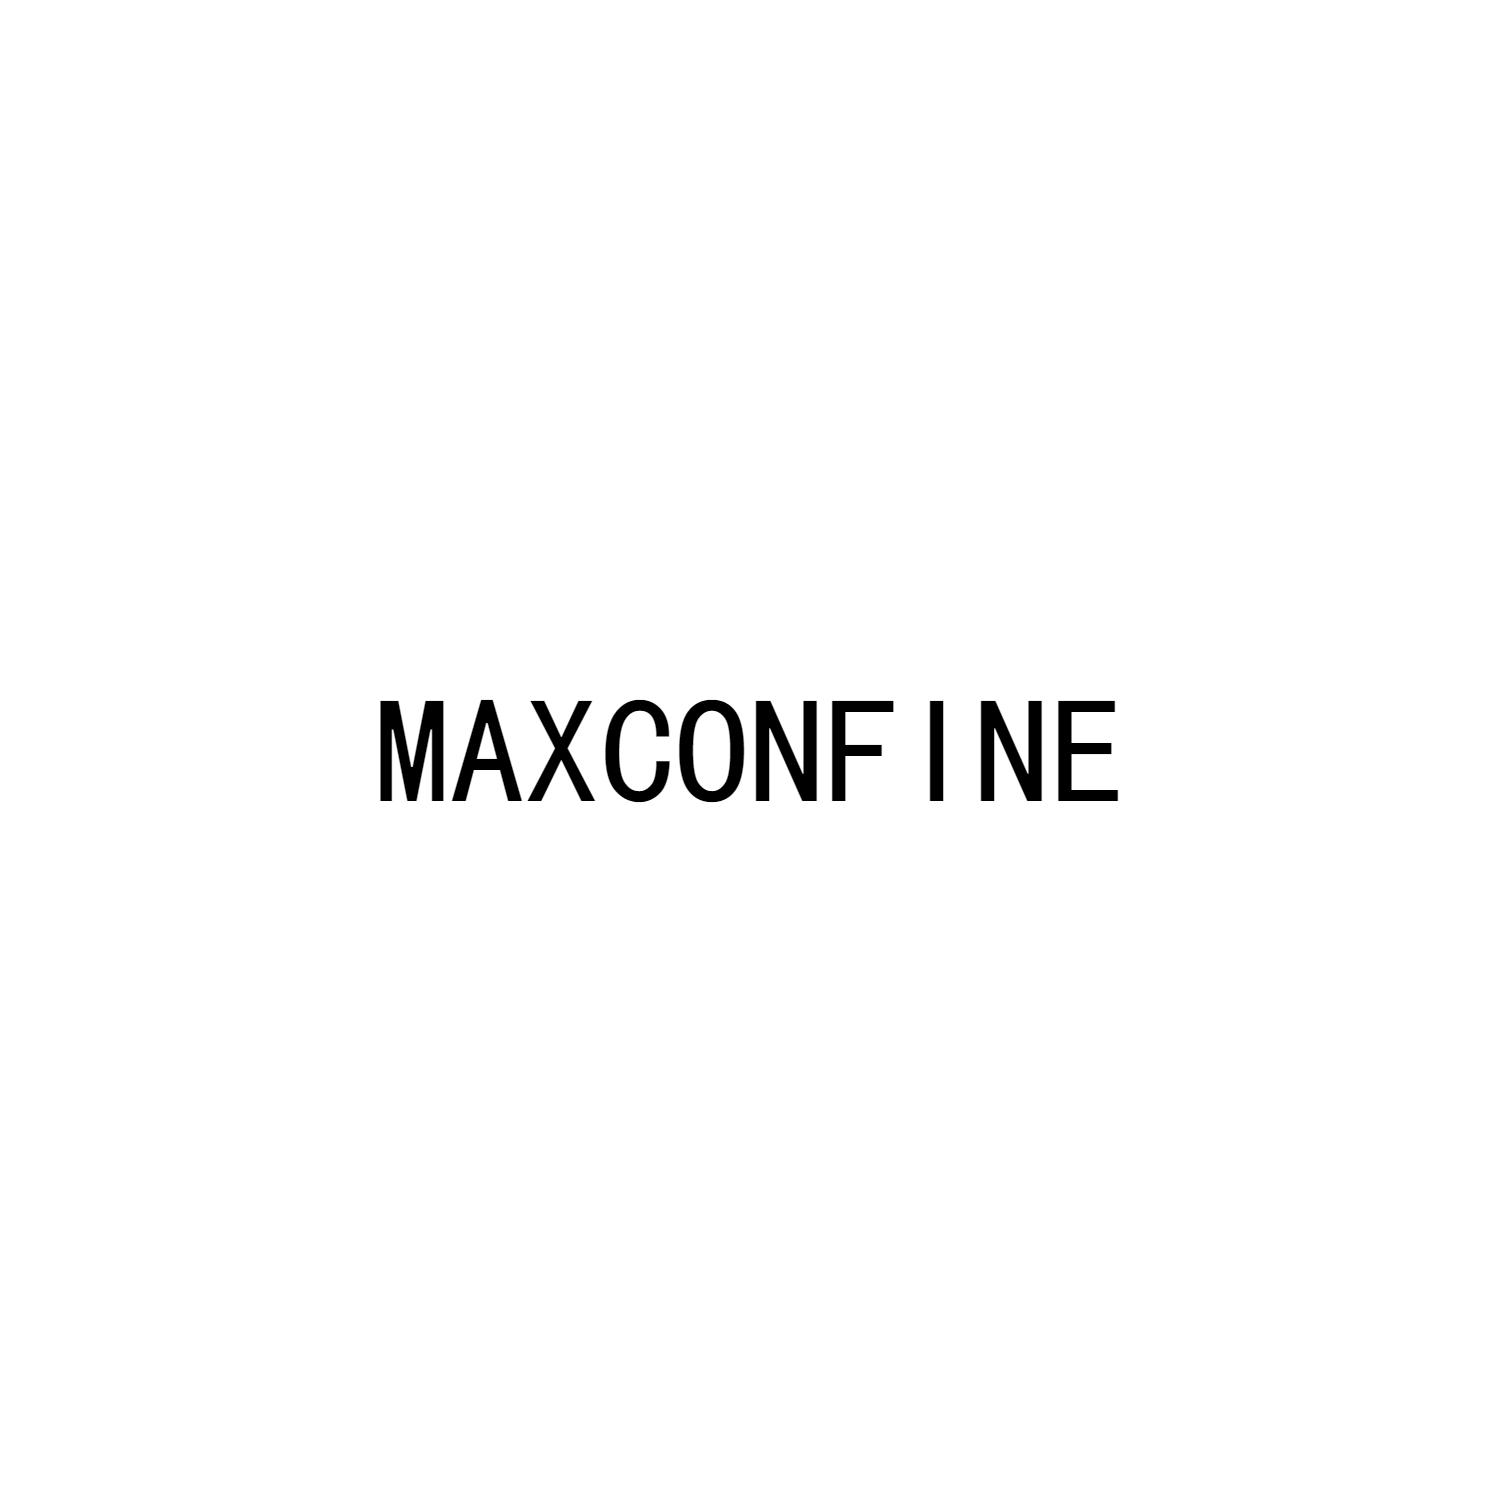 MAXCONFINE